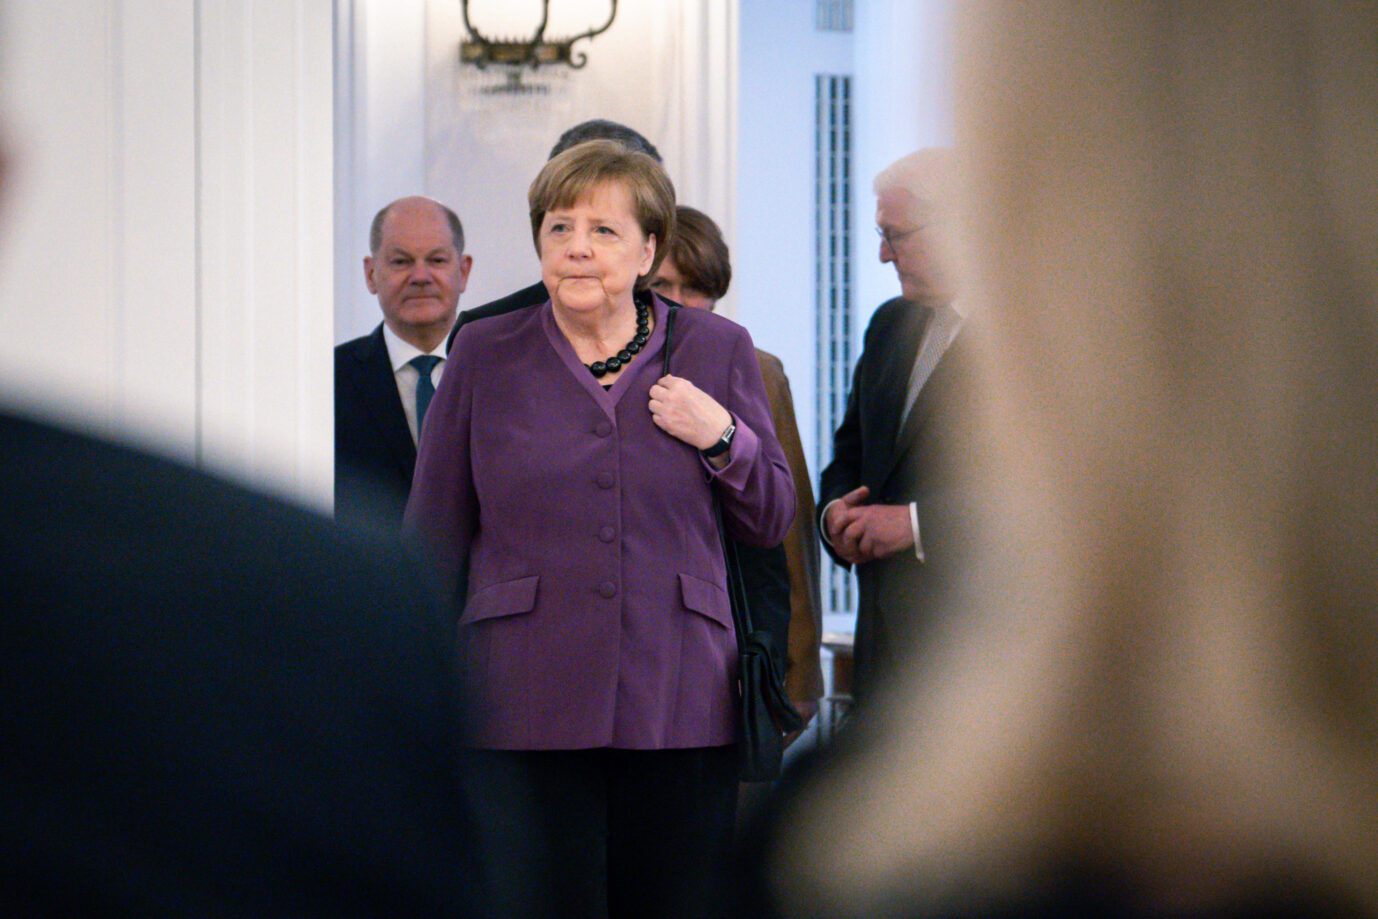 Allein im Jahr 2015 haben Bürger über tausend Anzeigen gegen die damalige Kanzlerin Merkel gestellt – vor allem wegen ihrer Migrationspolitik Foto: picture alliance / Flashpic | Jens Krick